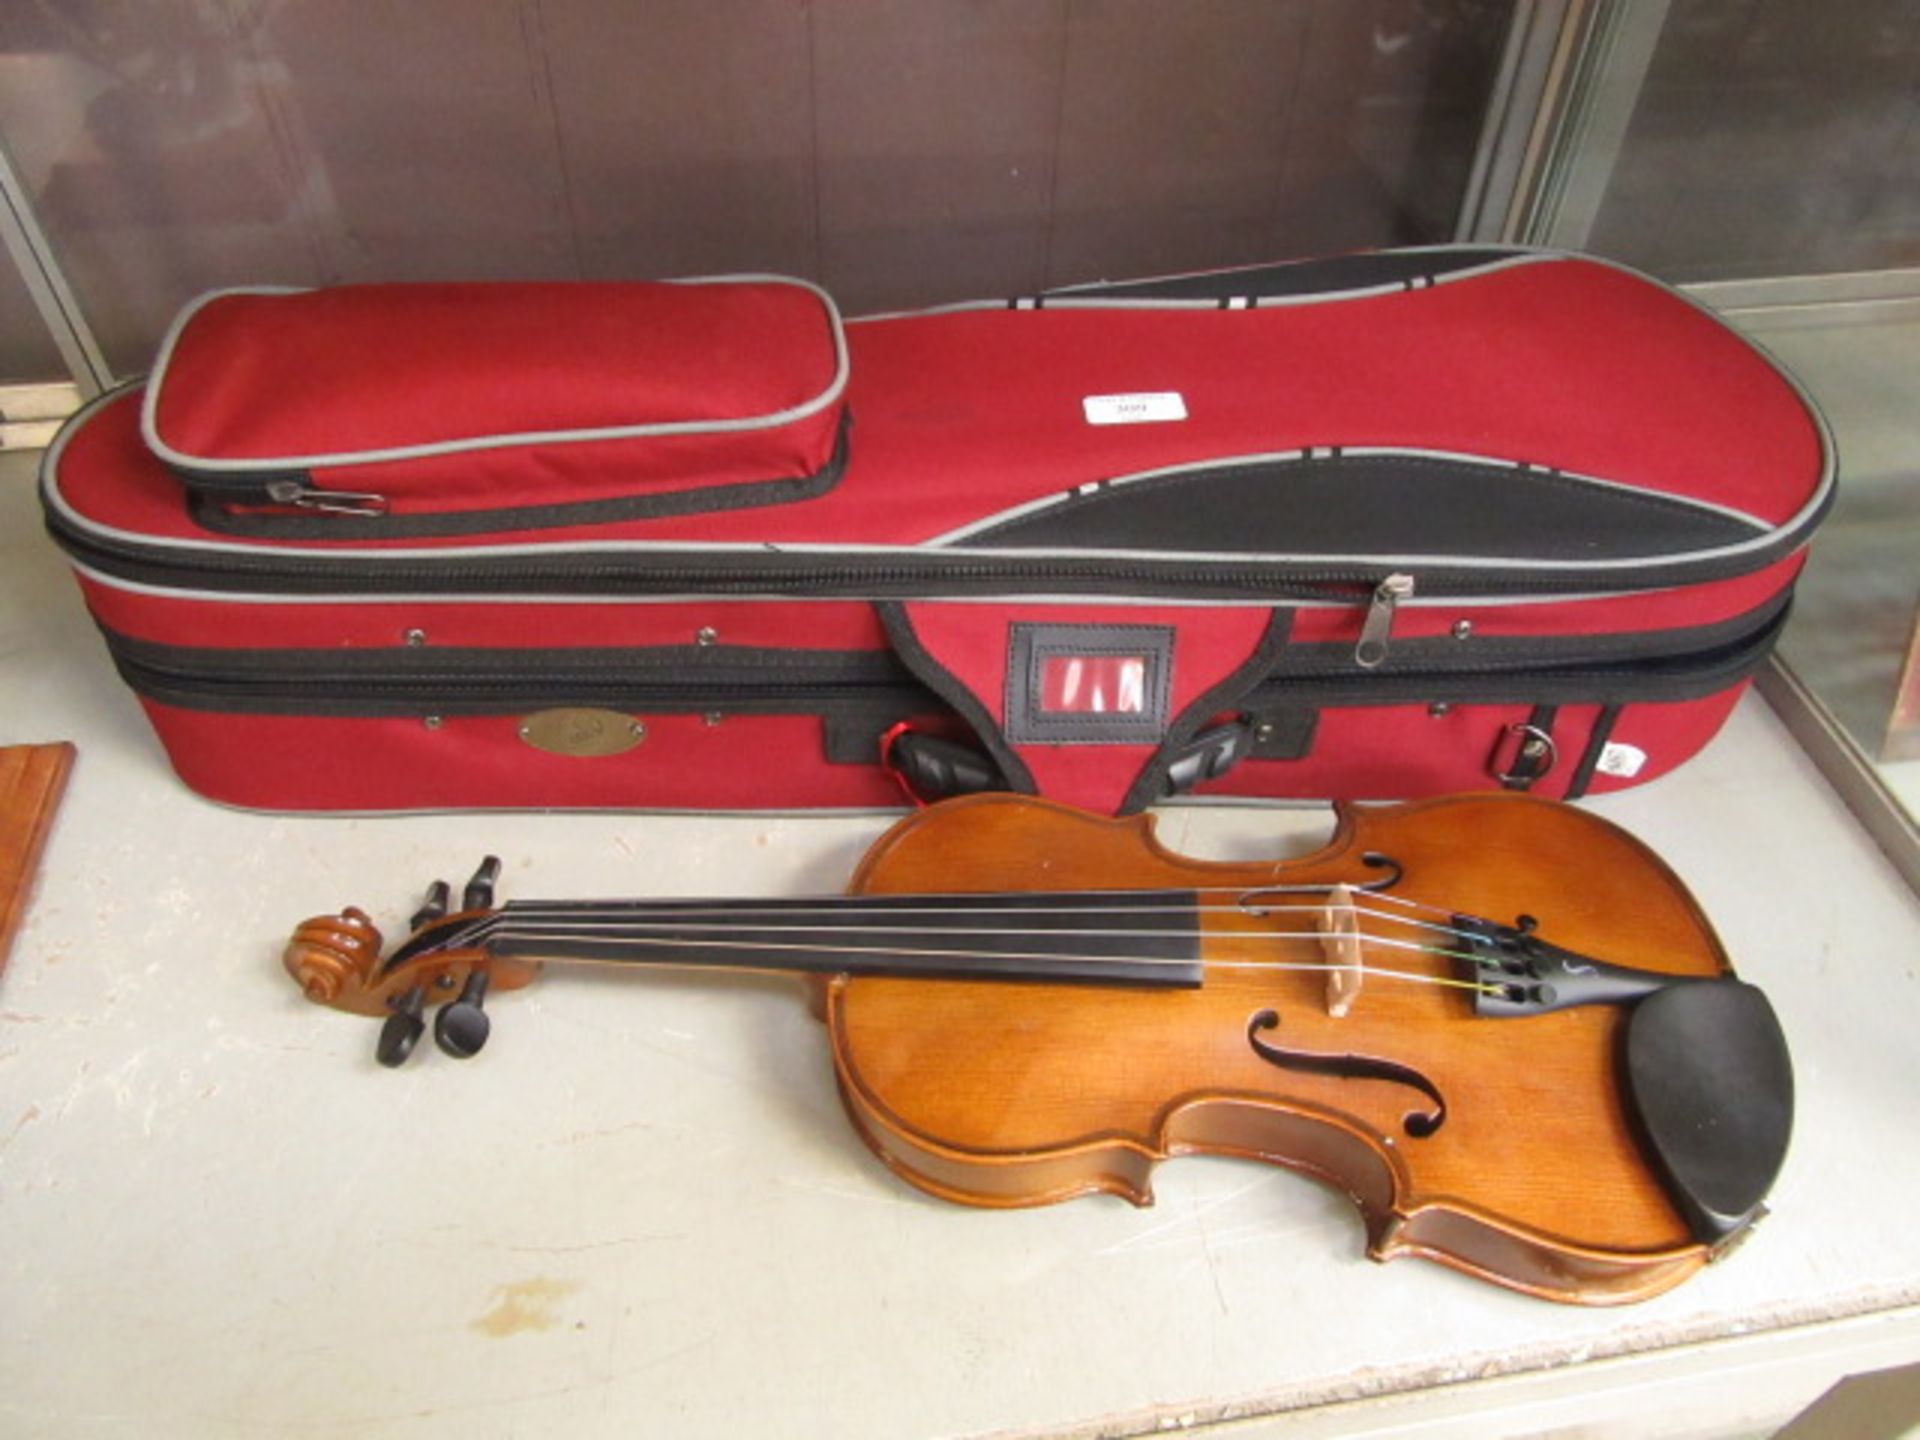 A Senator Student II violin in case CONDITION REPORT: Violin is 1/4 size (50cm